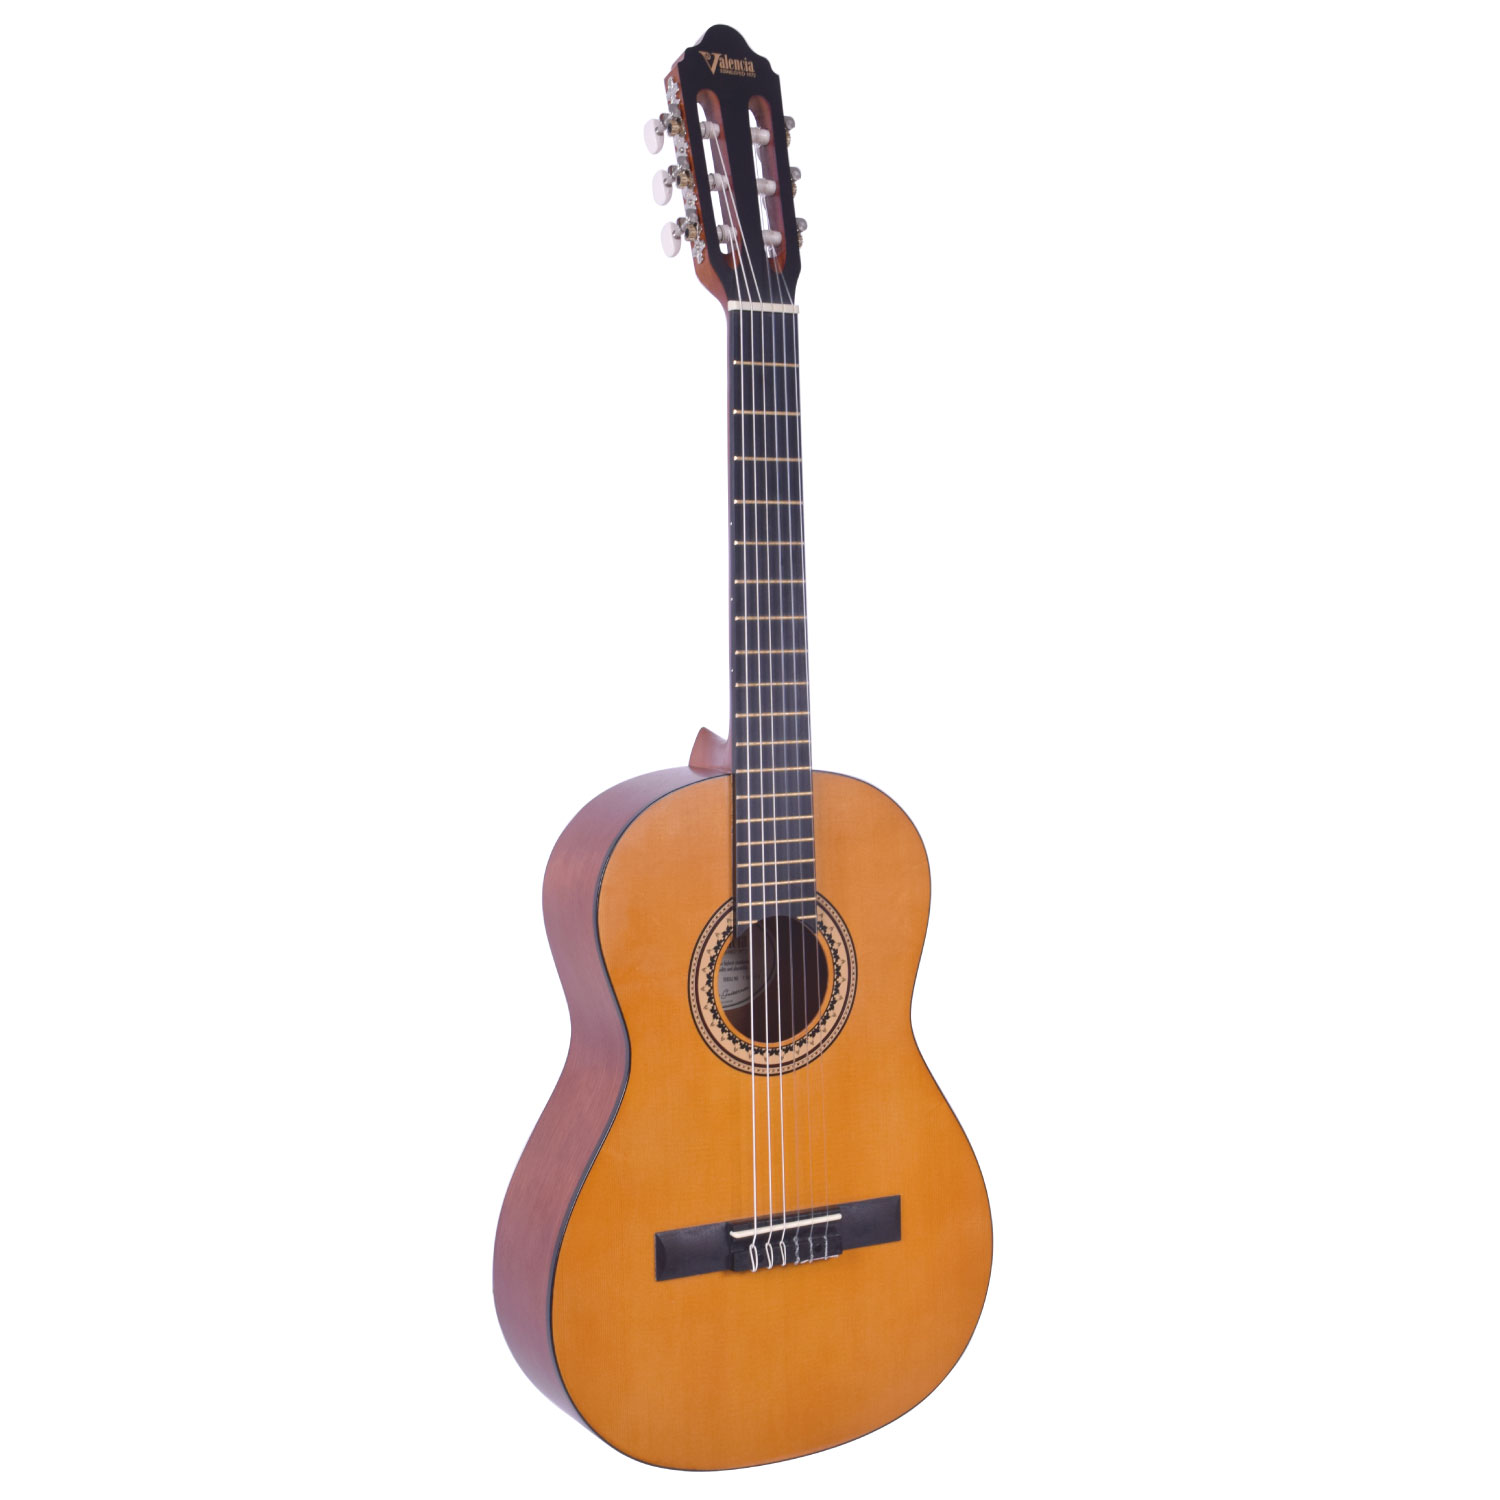 【VALENCIA】シトカ・スプルーストップ、 3/4サイズの クラシックギターが登場。